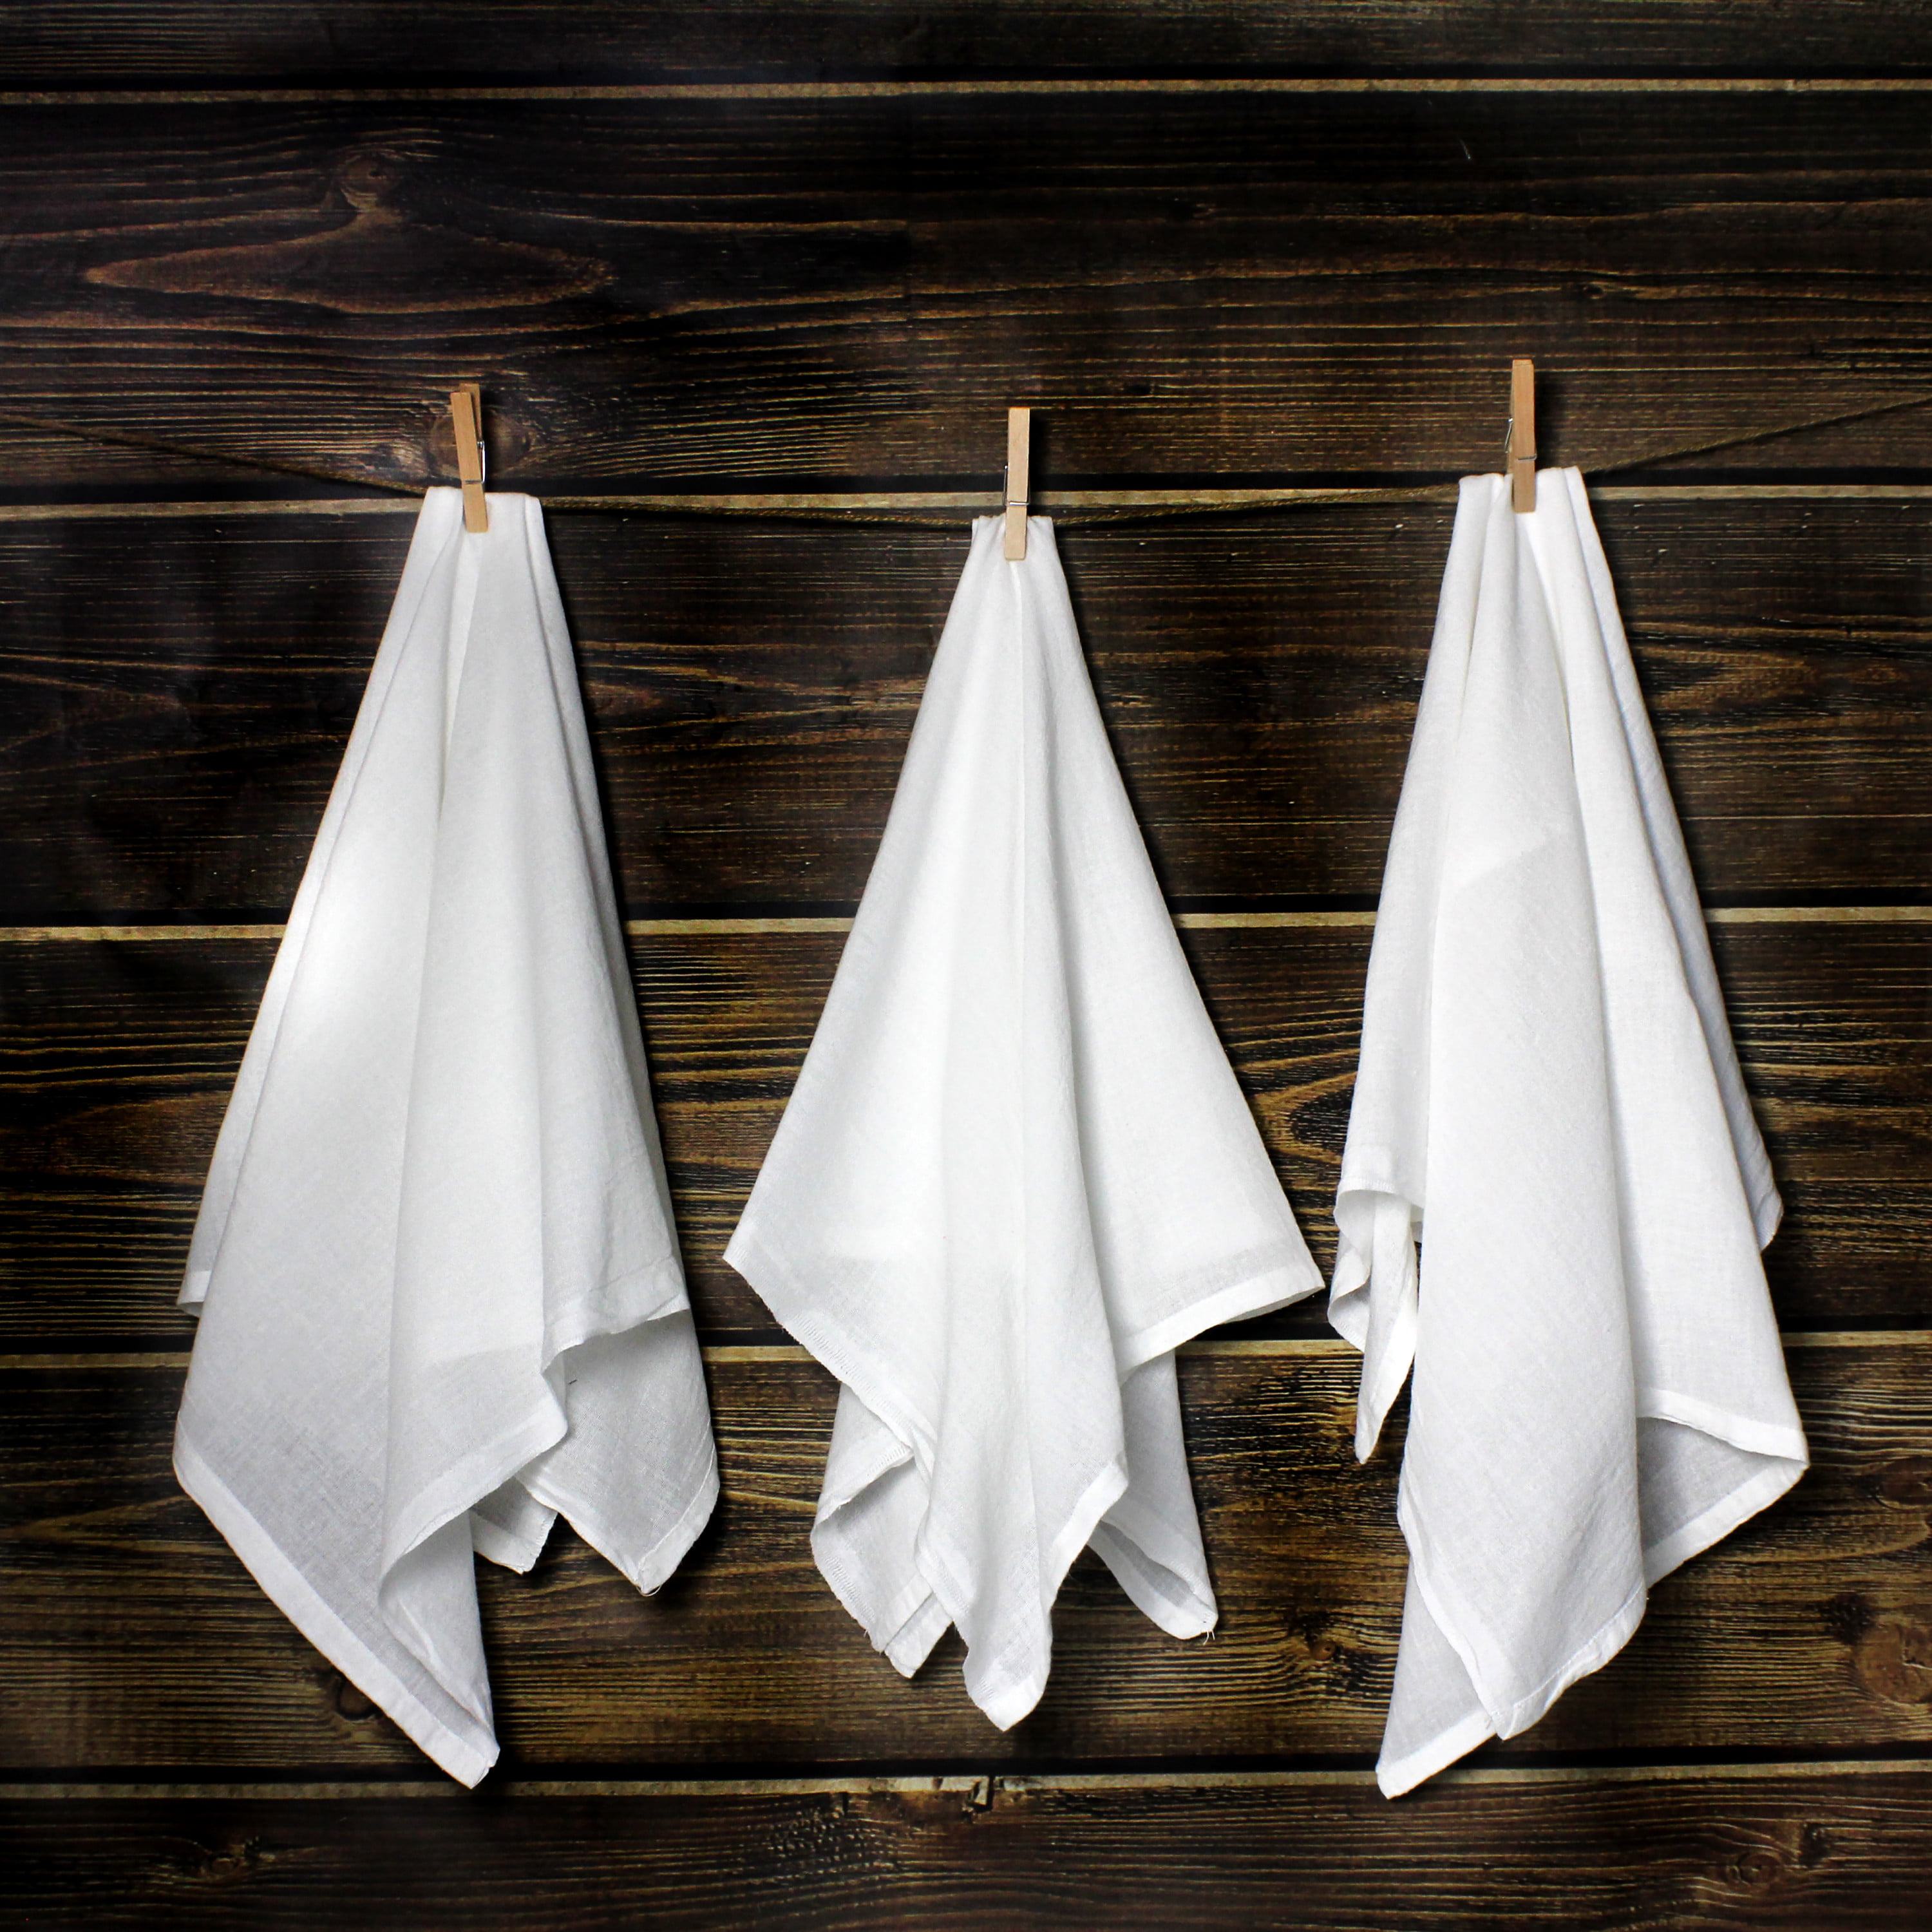 VTG FLOUR SACK TOWELS 5 PACK Excello Kitchen Towel PLAIN UNPRINTED OFF  WHITE